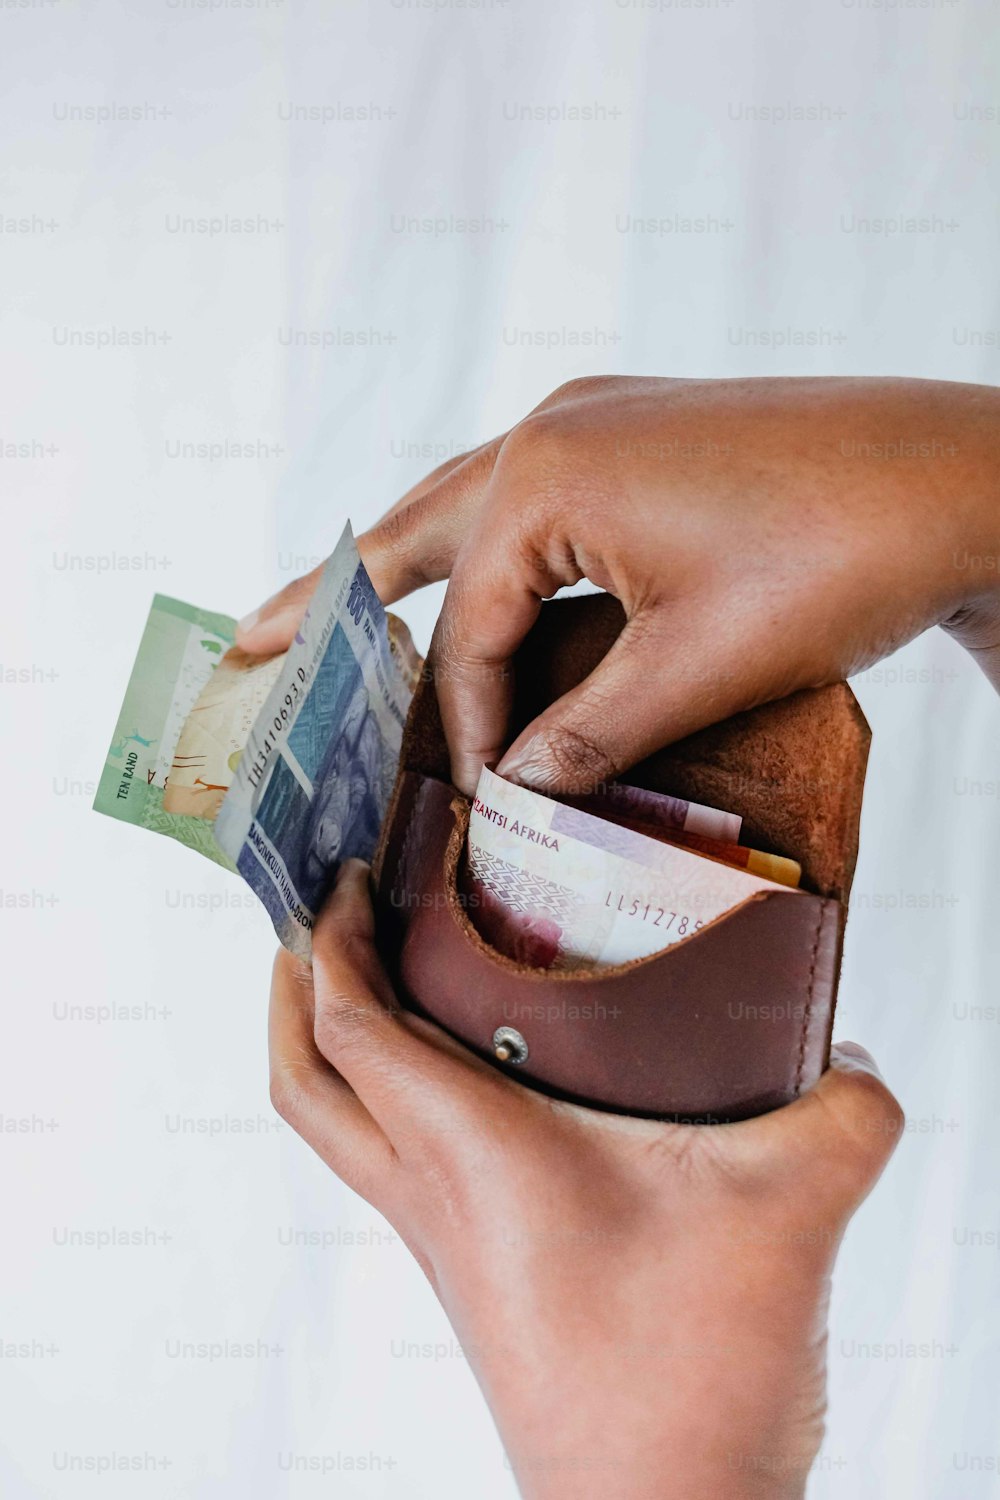 Una persona poniendo dinero en una billetera